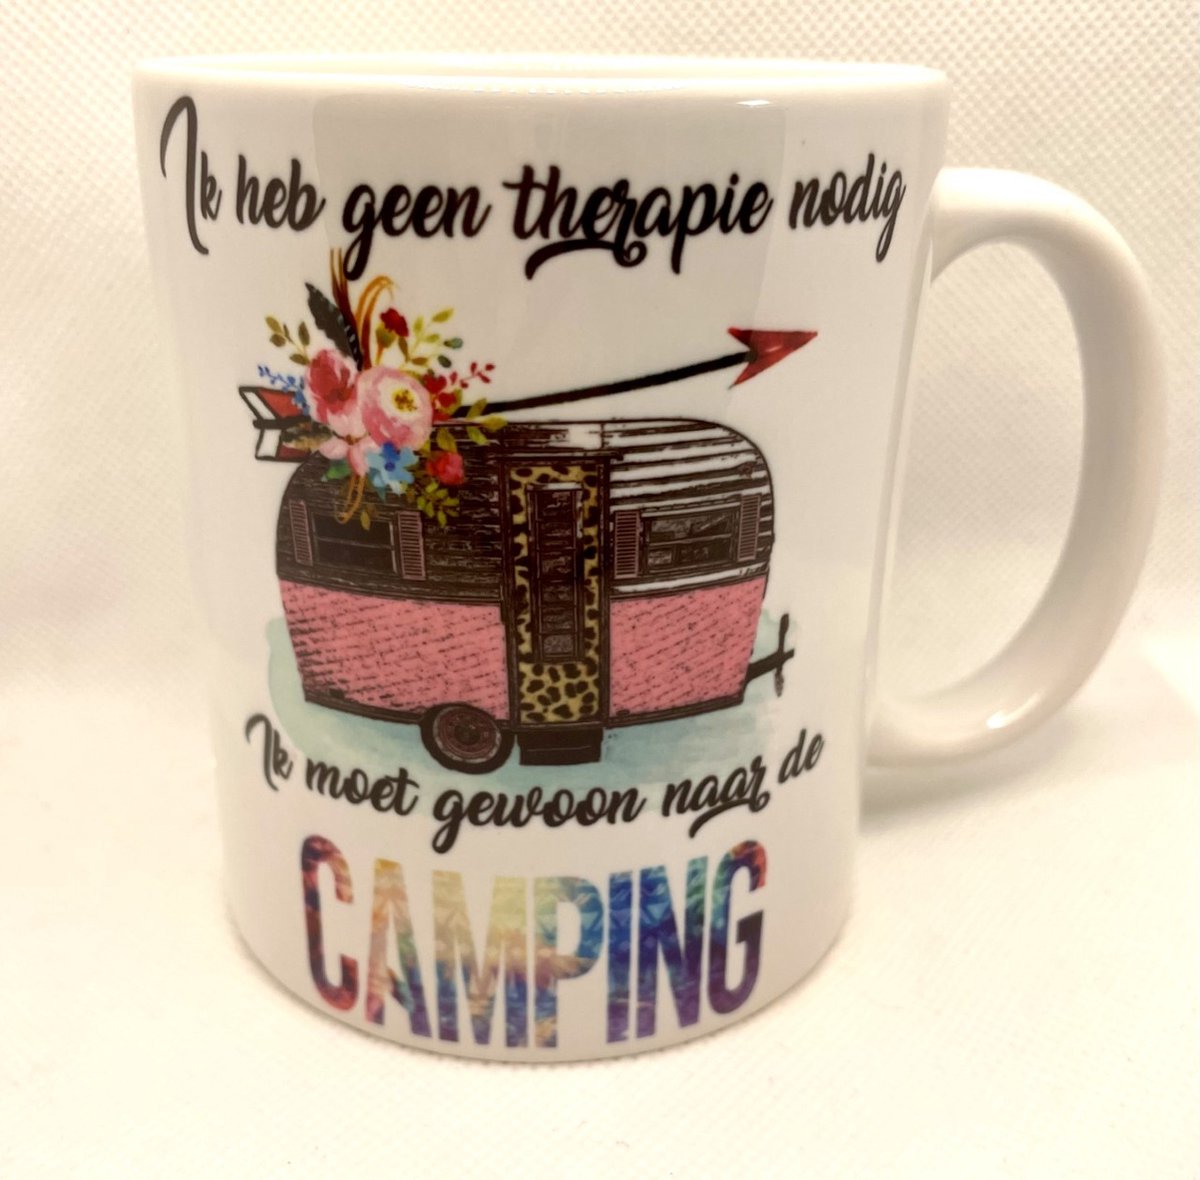 Mok camping/Camping cadeau/Mok ik heb geen therapie nodig ik moet gewoon naar de camping